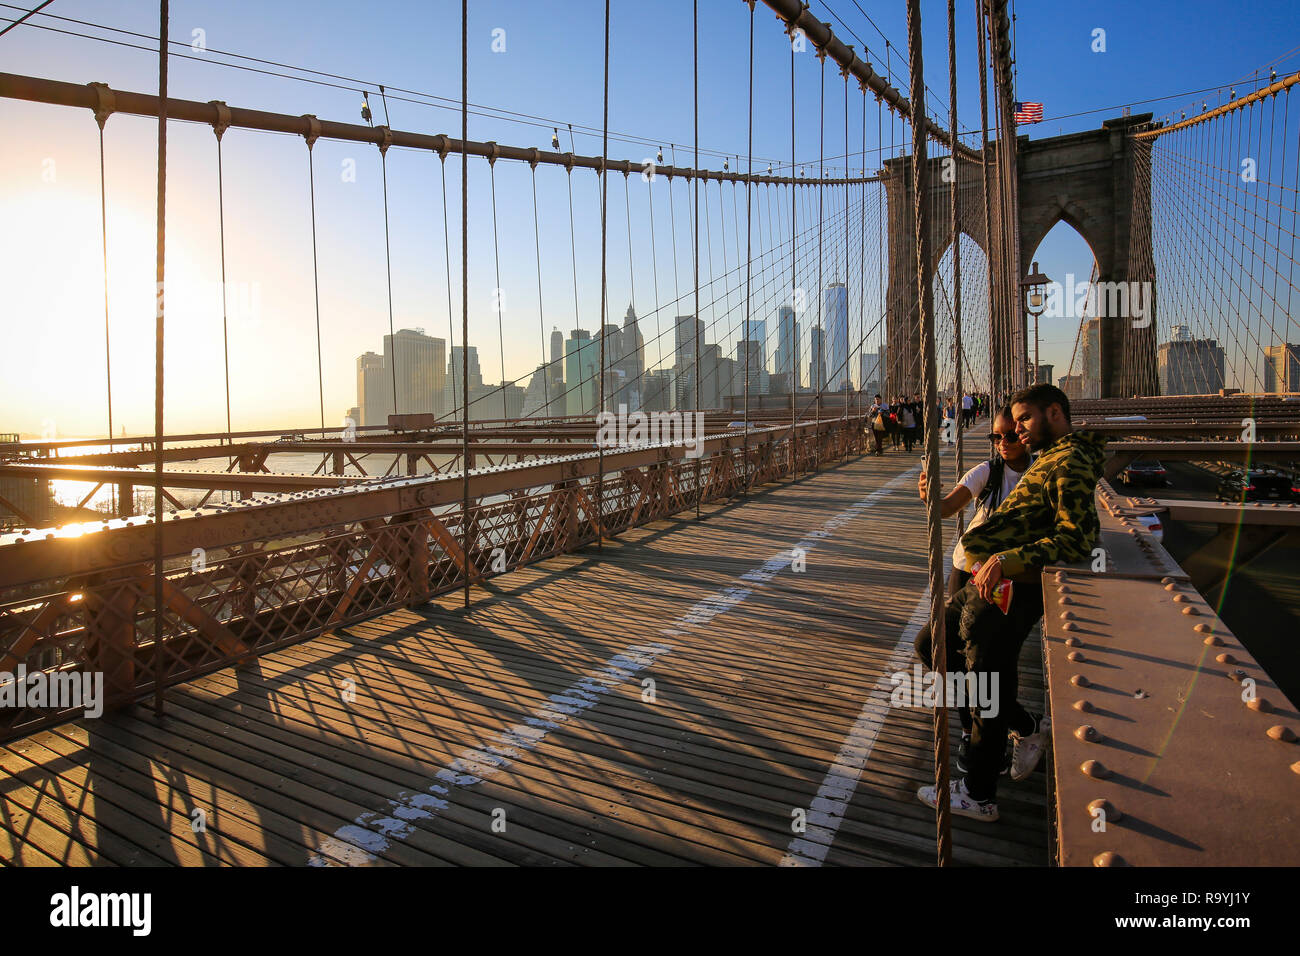 21.02.2018, New York City, New York, Vereinigte Staaten von Amerika - Menschen auf der Brooklyn Bridge, Blick auf die Manhattan Skyline mit Freedom To Stock Photo